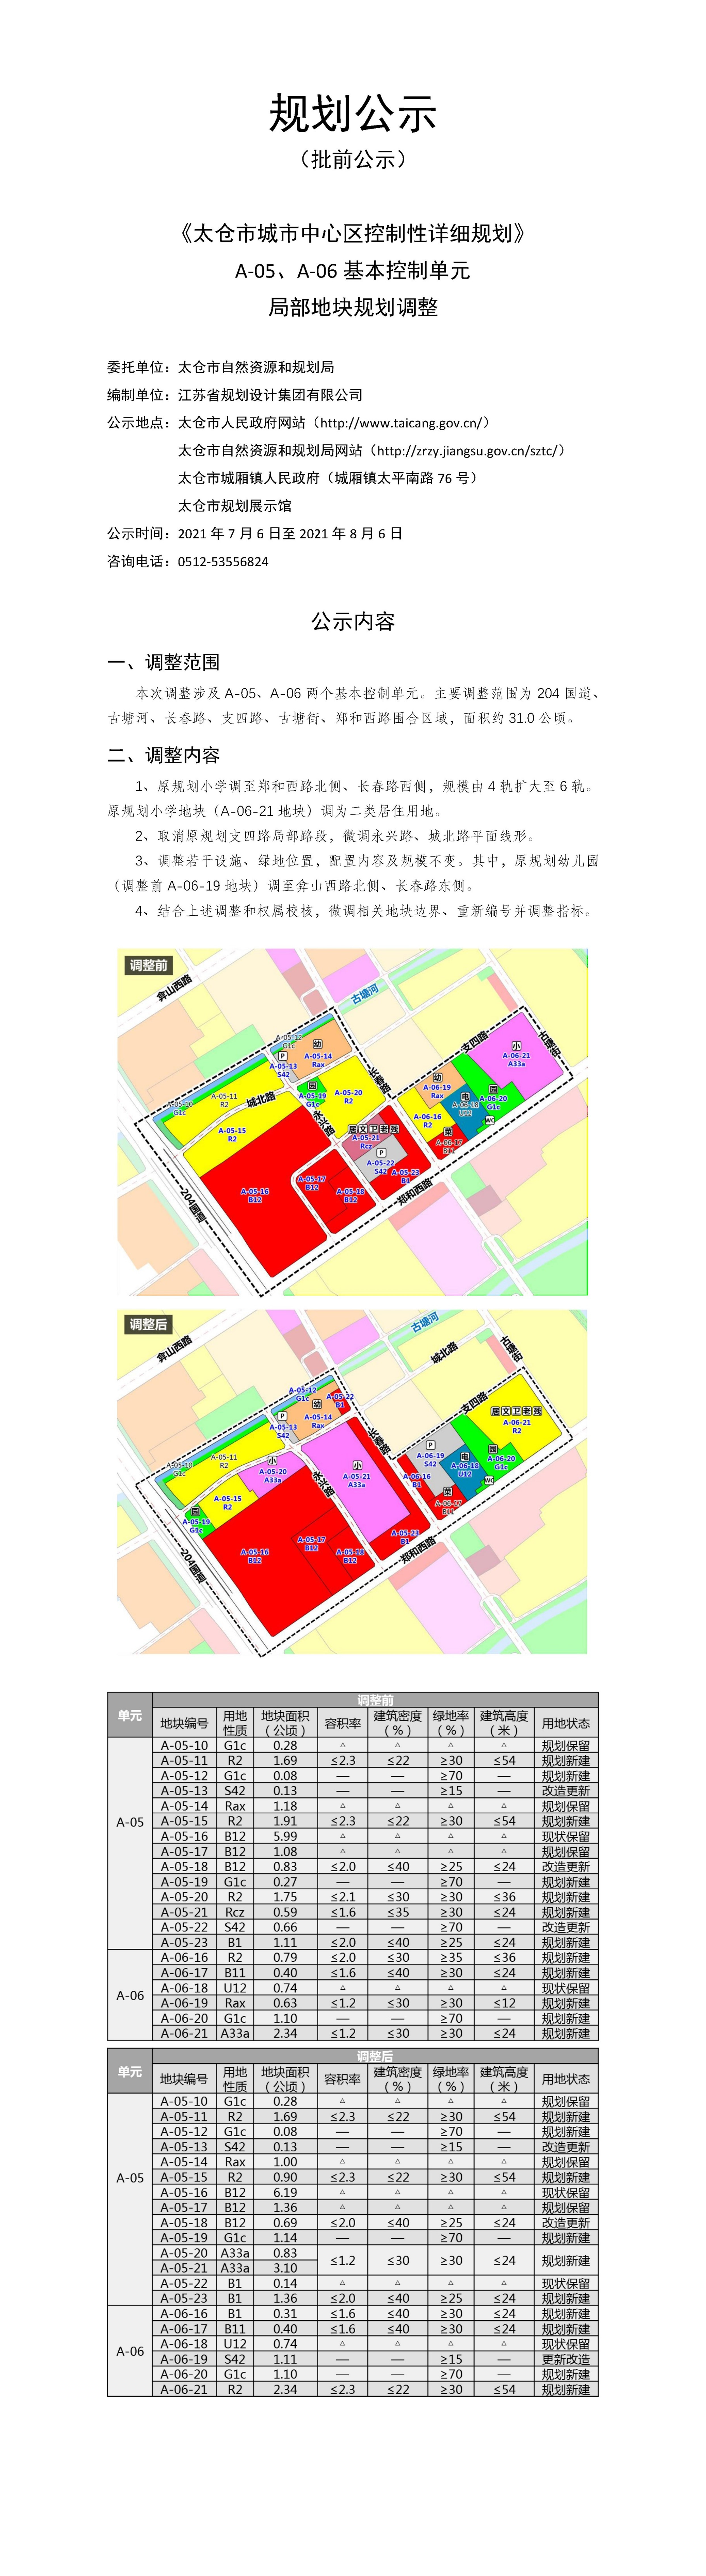 《太仓市城市中心区控制性详细规划》局部地块规划调整